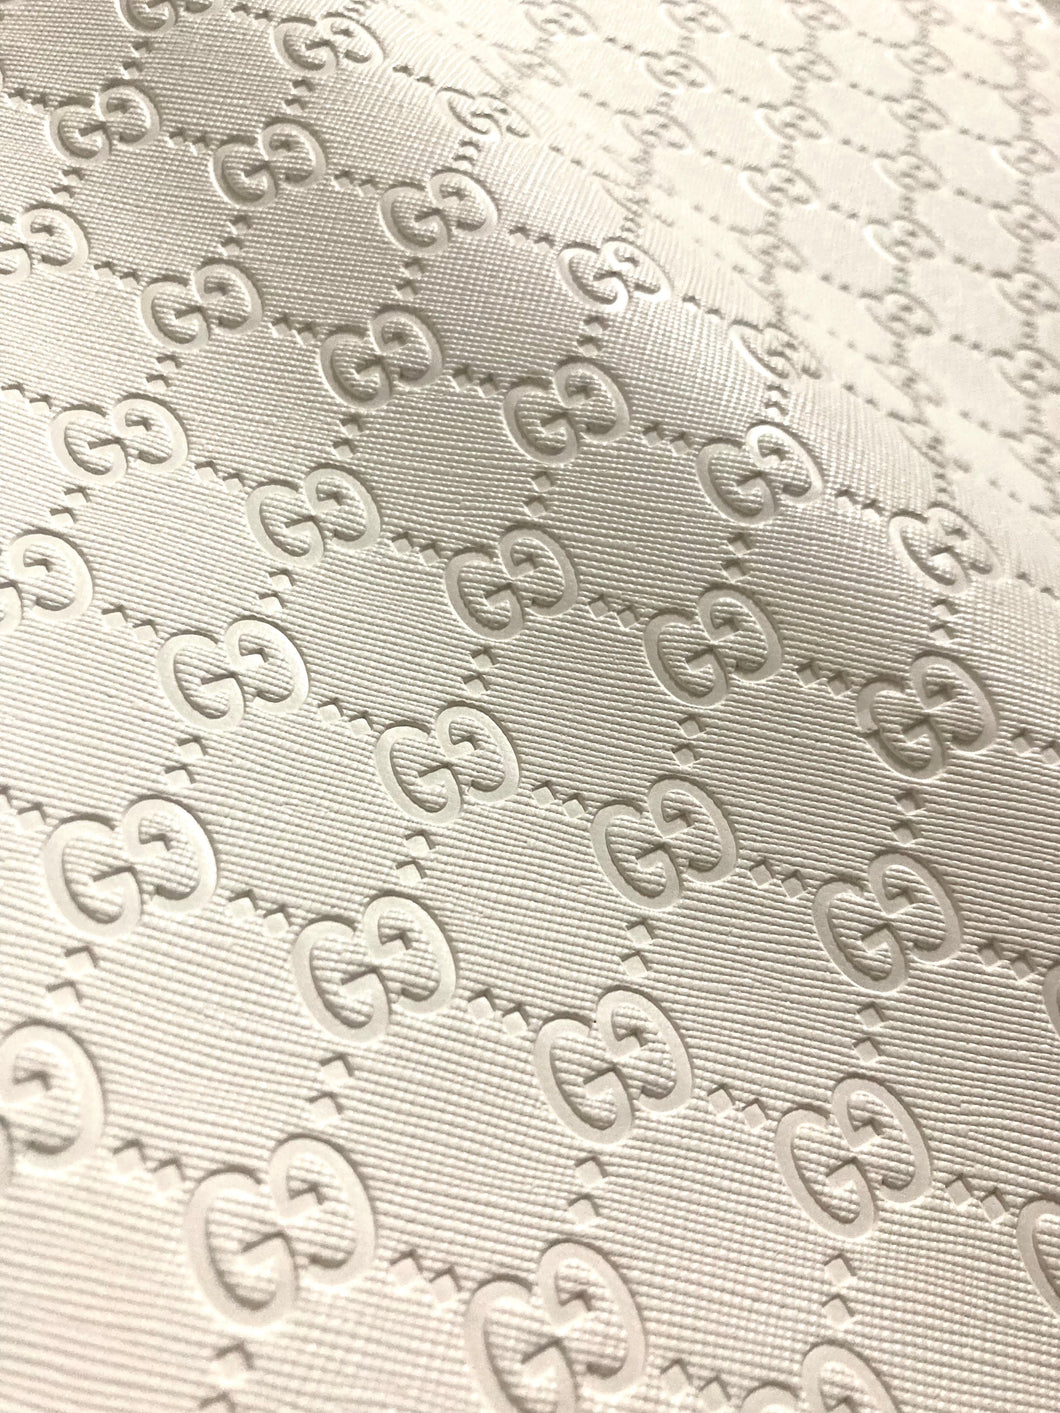 Custom Handmade Leather White Embossed Gucci for Sneaker Upholstery